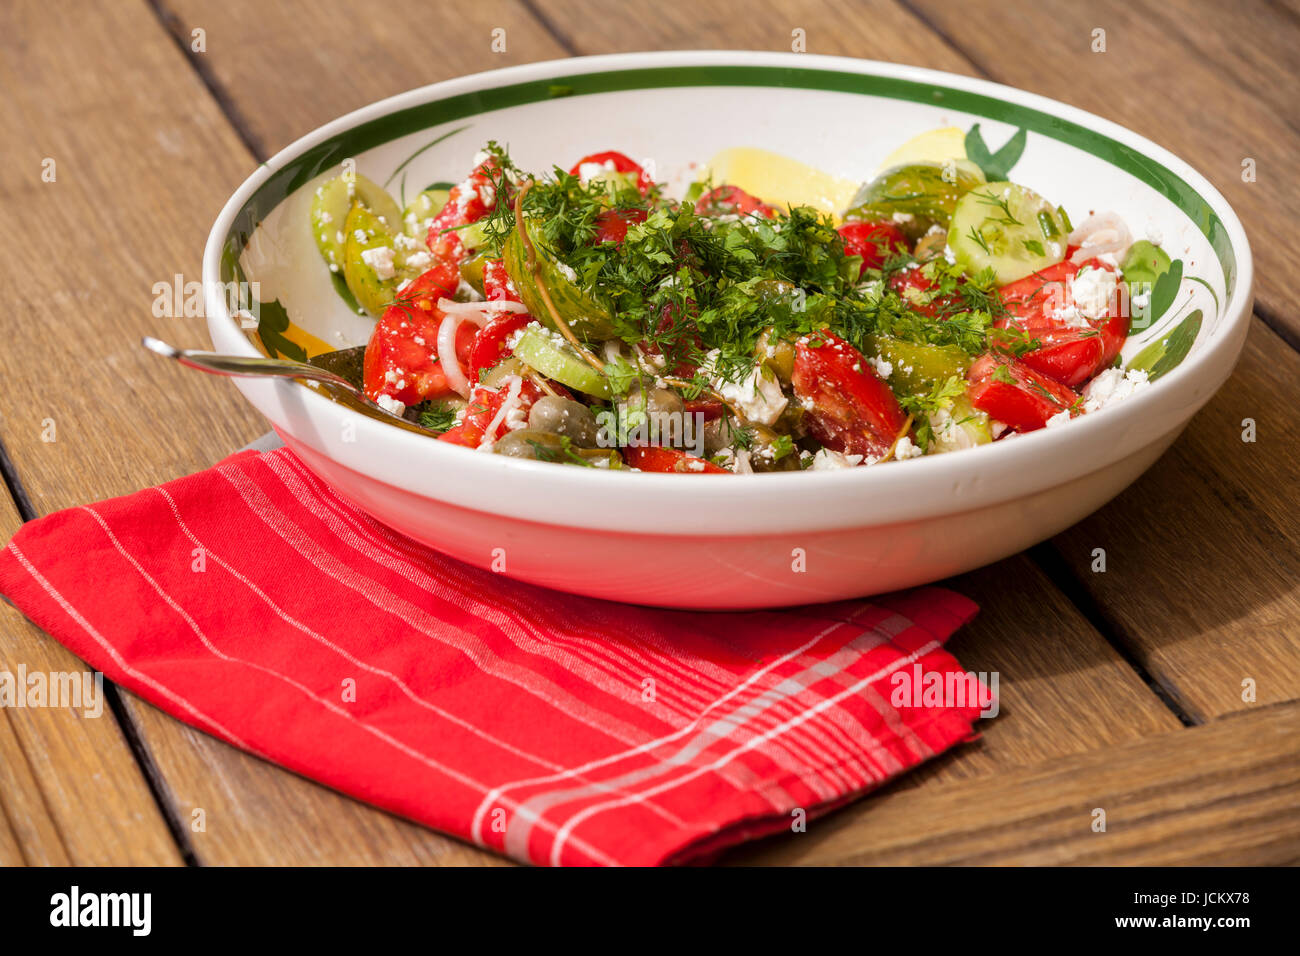 Schüssel mit mariniertem griechischen Salat mit Tomaten käse und oliven auf einem holz untergrund Stock Photo